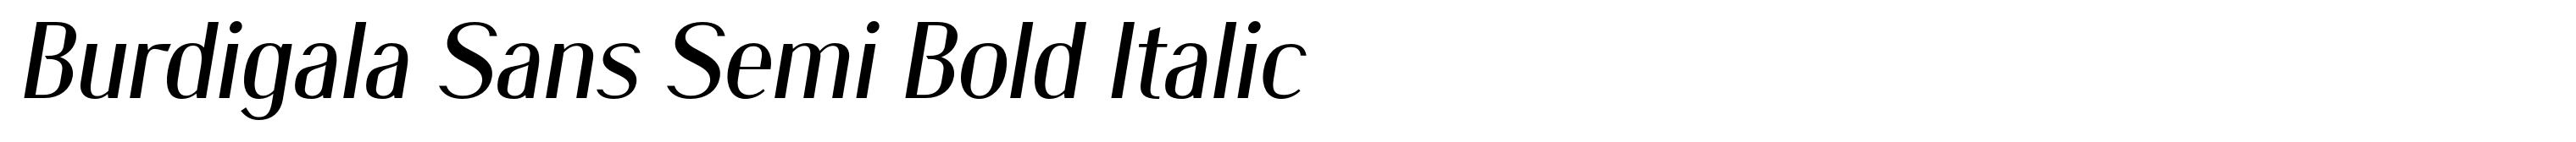 Burdigala Sans Semi Bold Italic